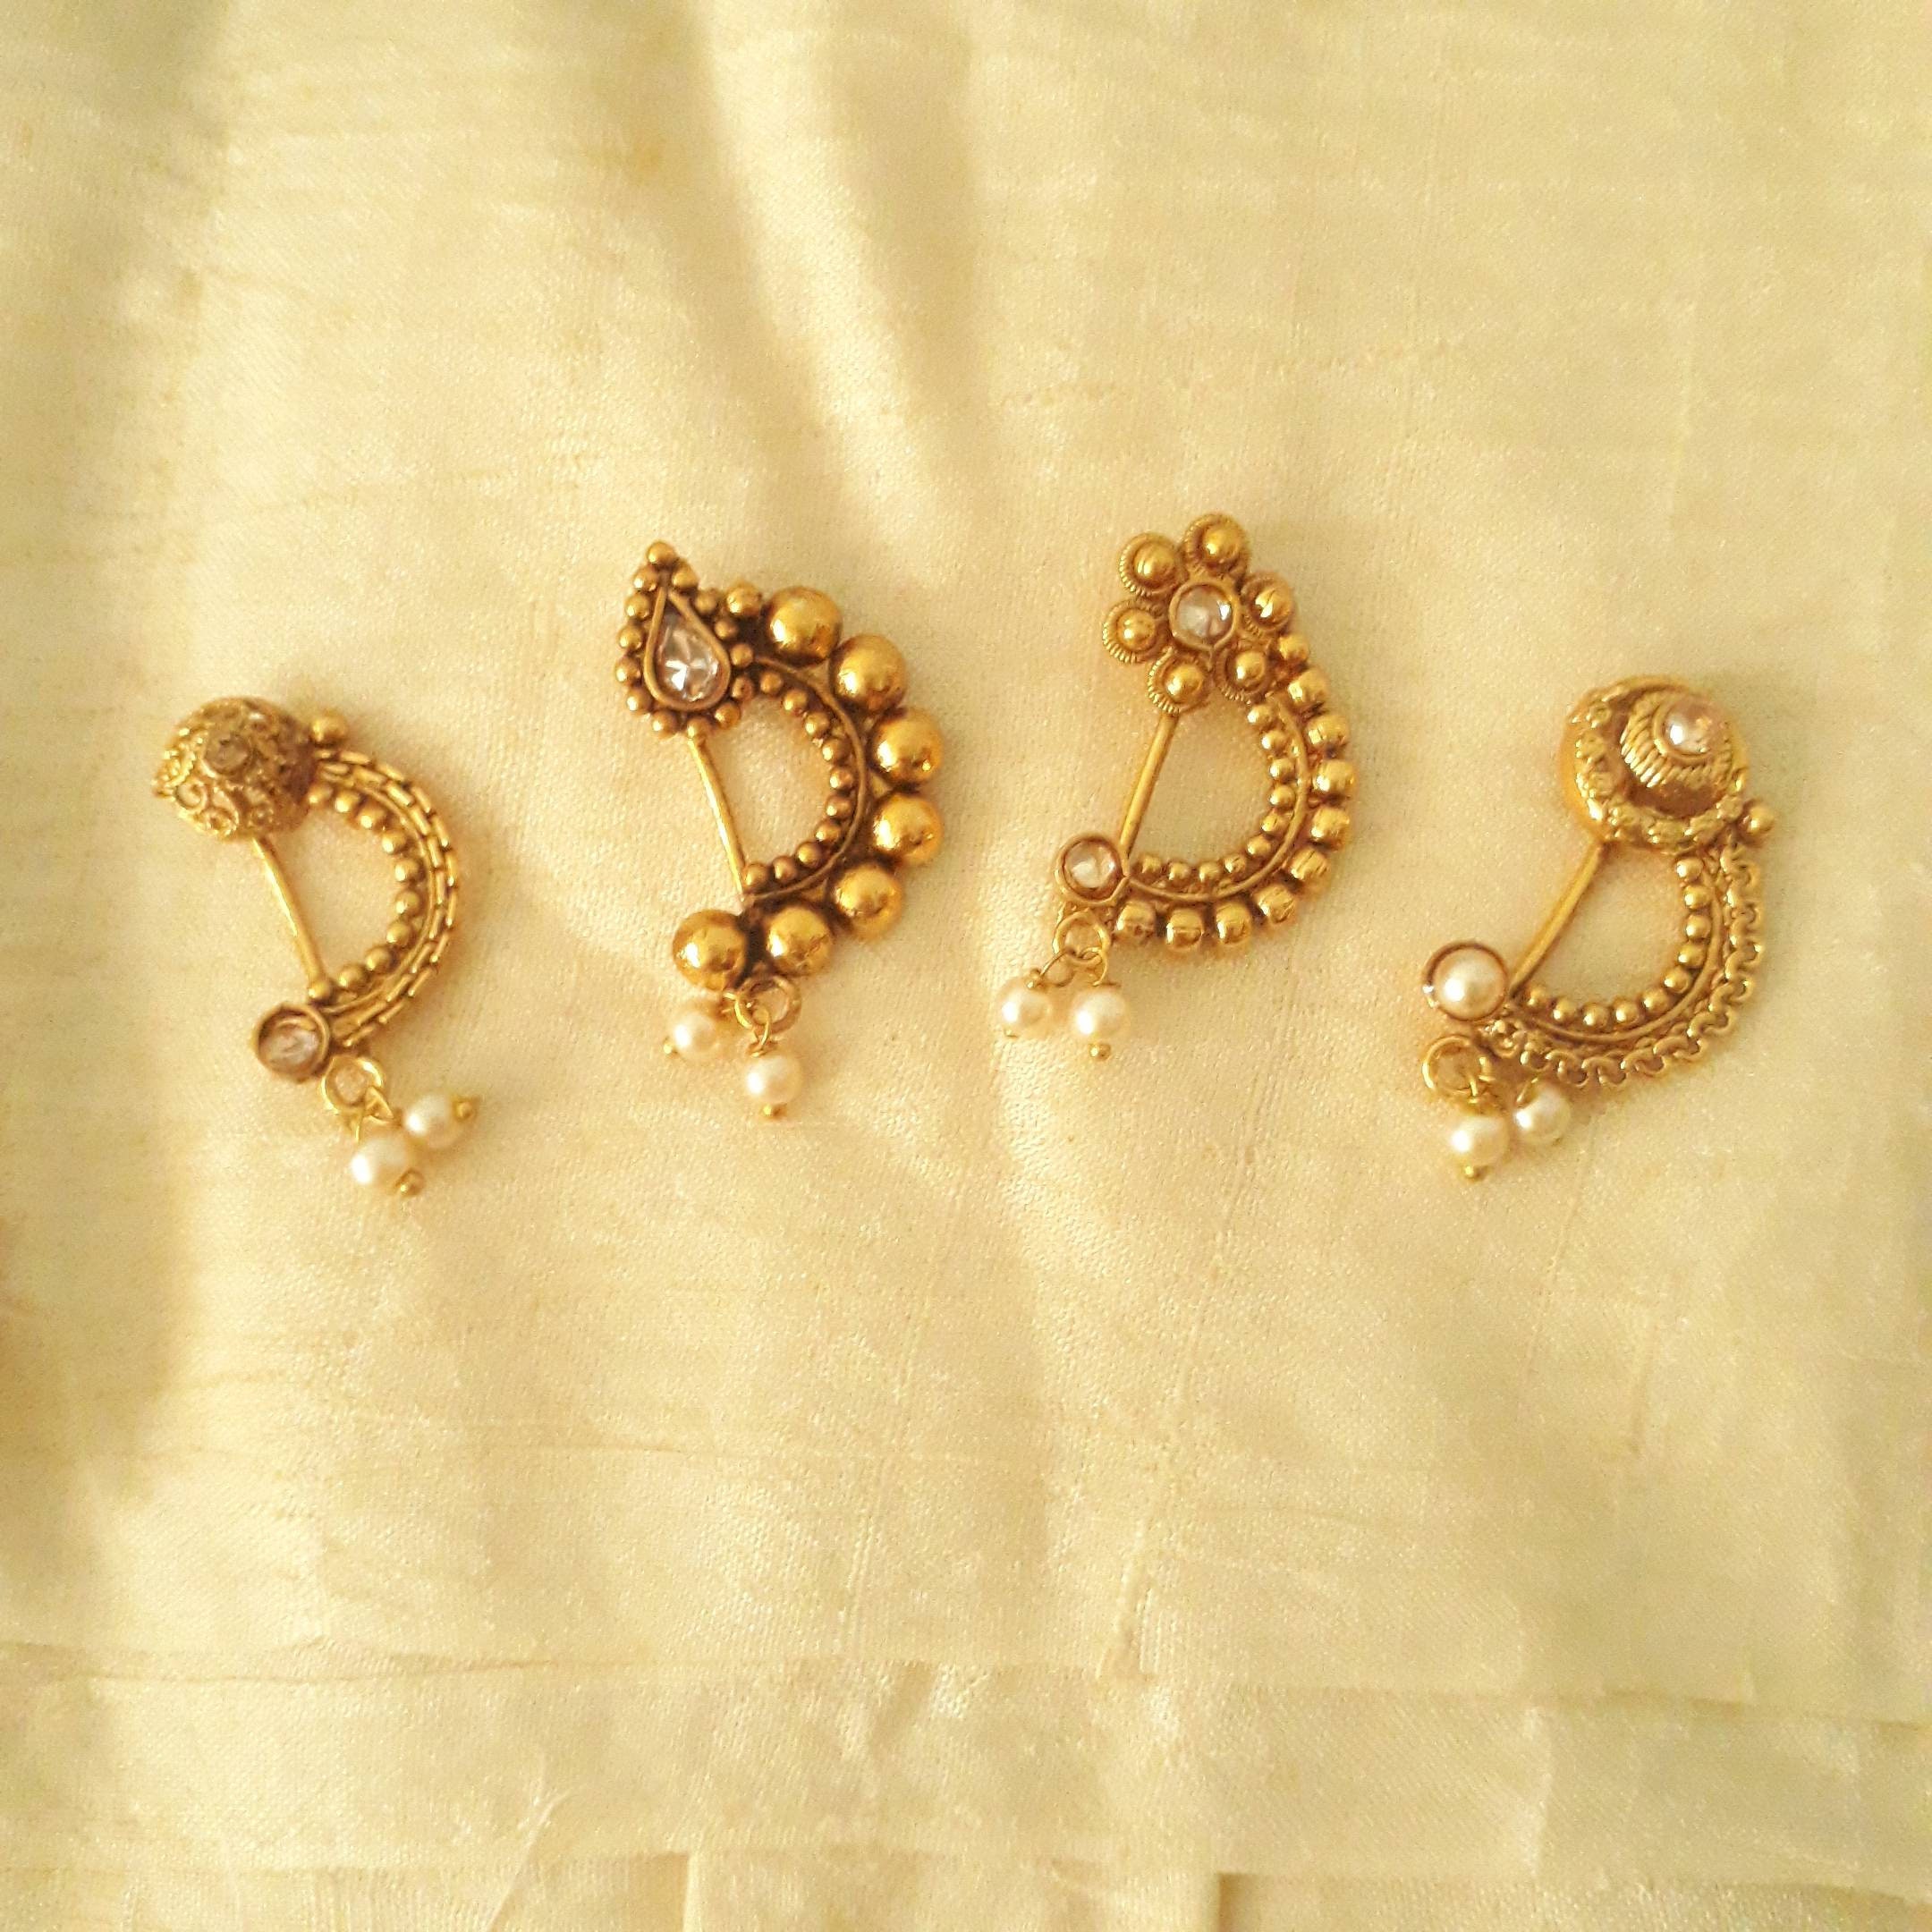 SMCTCRED Traditional Indian Style Gold Tone Chain Nose Anneau Nath Hoop Accessoires Bijoux Cadeau pour Les Femmes 